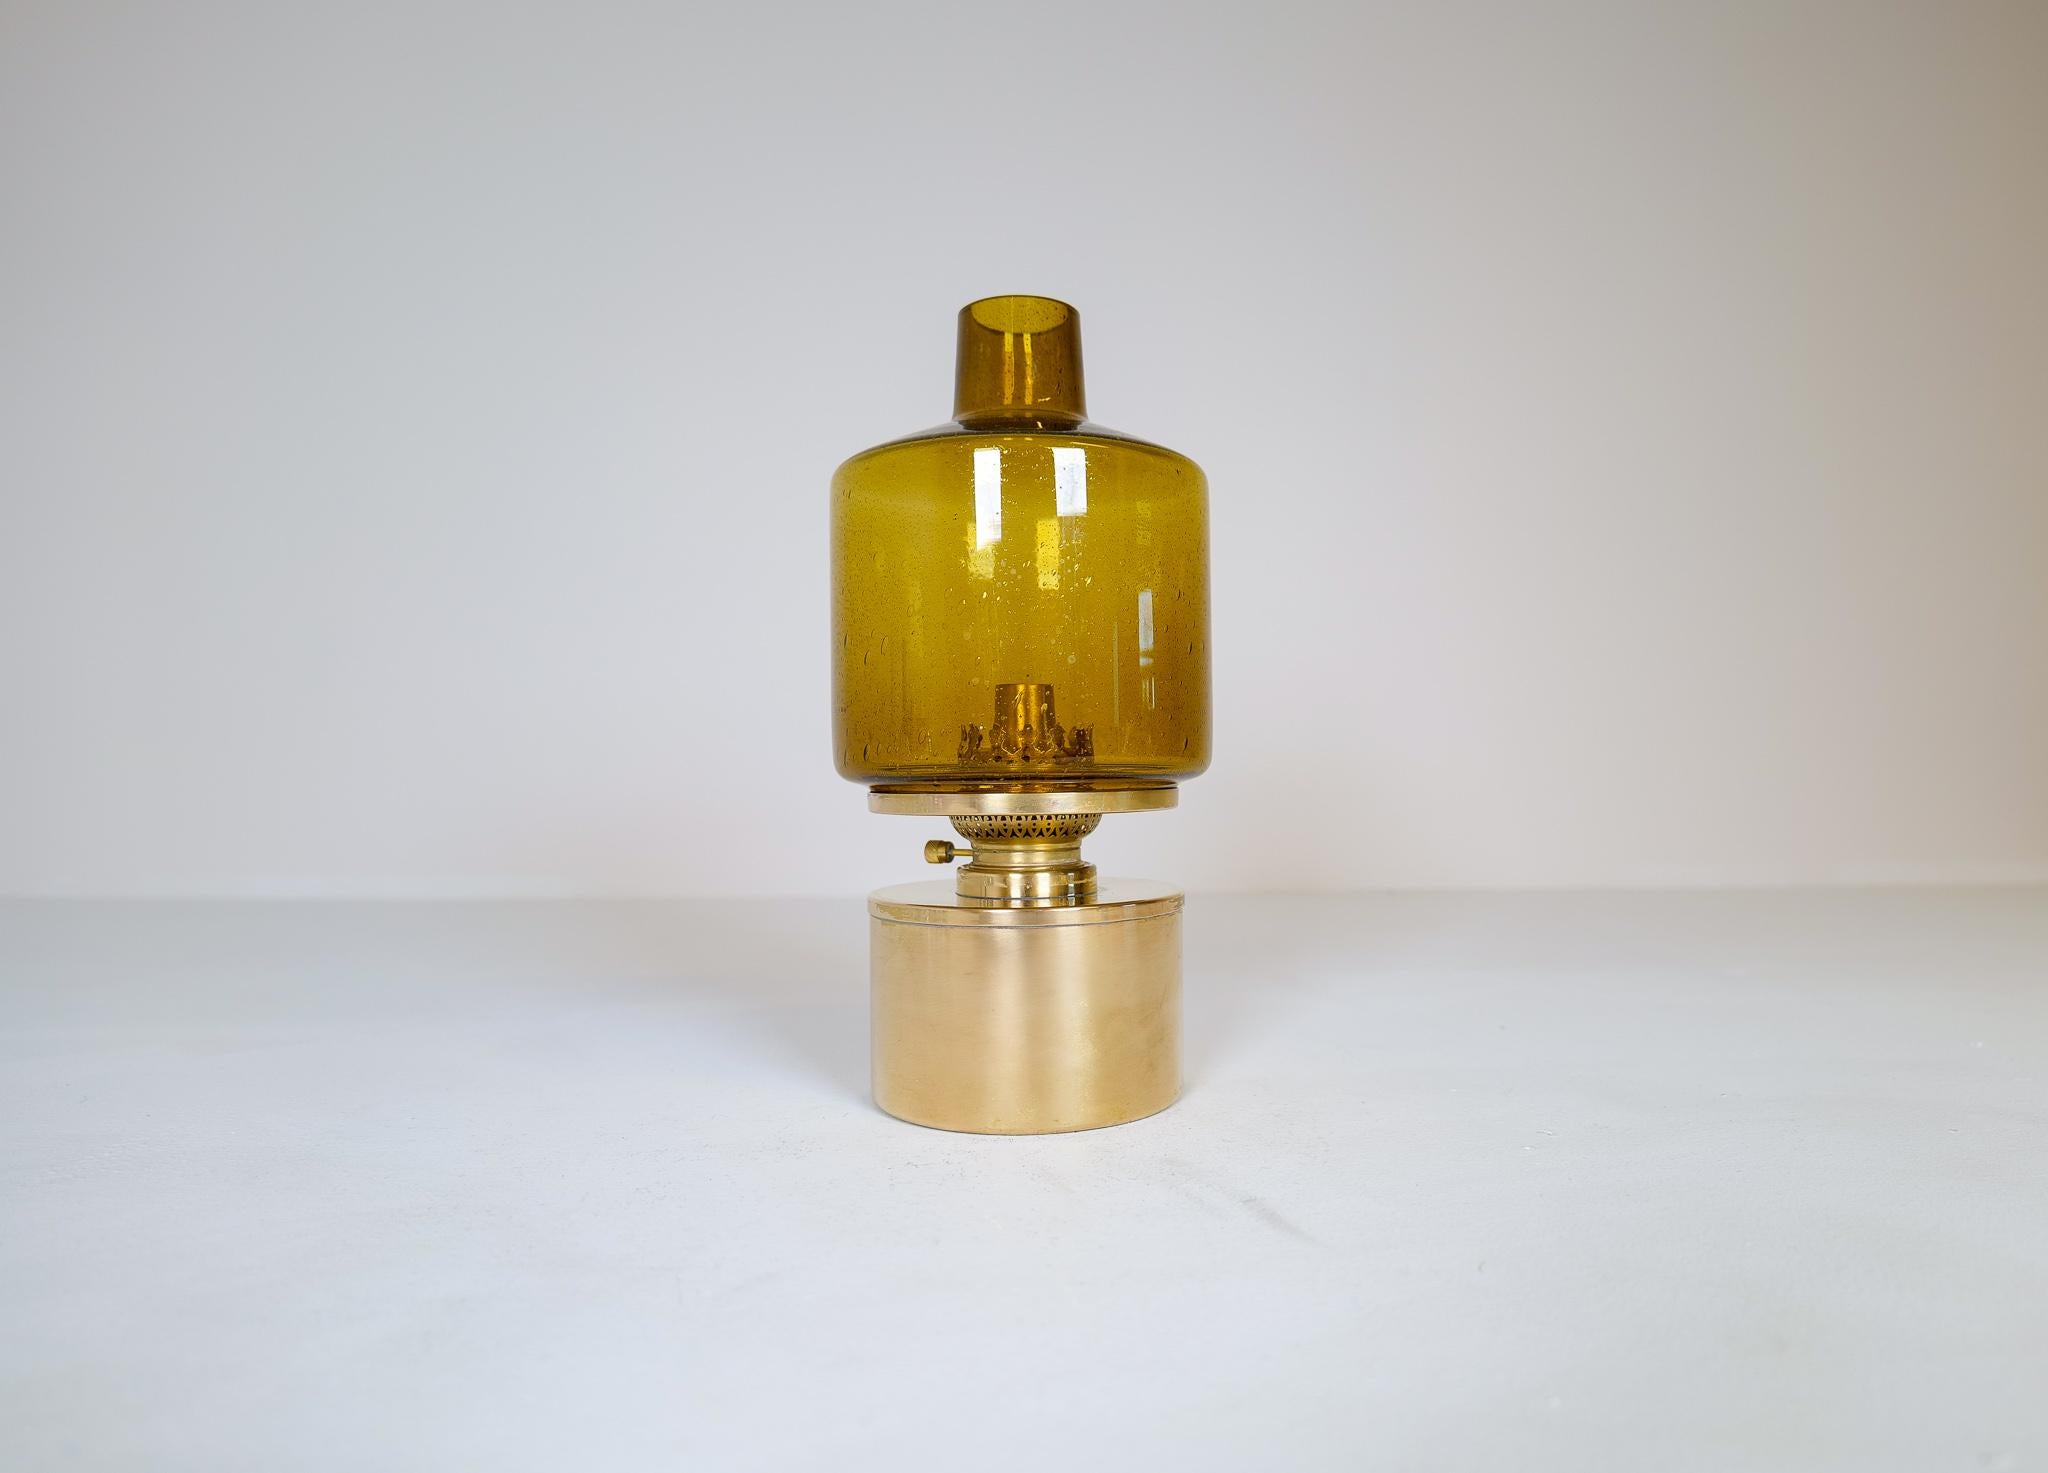 Lampe de table modèle lampe à huile modèle L-47 conçue par Hans-Agne Jakobsson. Produit par Hans-Agne Jakobsson à Markaryd, Suède. Verre soufflé à la main de couleur ambre. La pièce est composée d'une base en laiton poli et d'un verre. L'ensemble